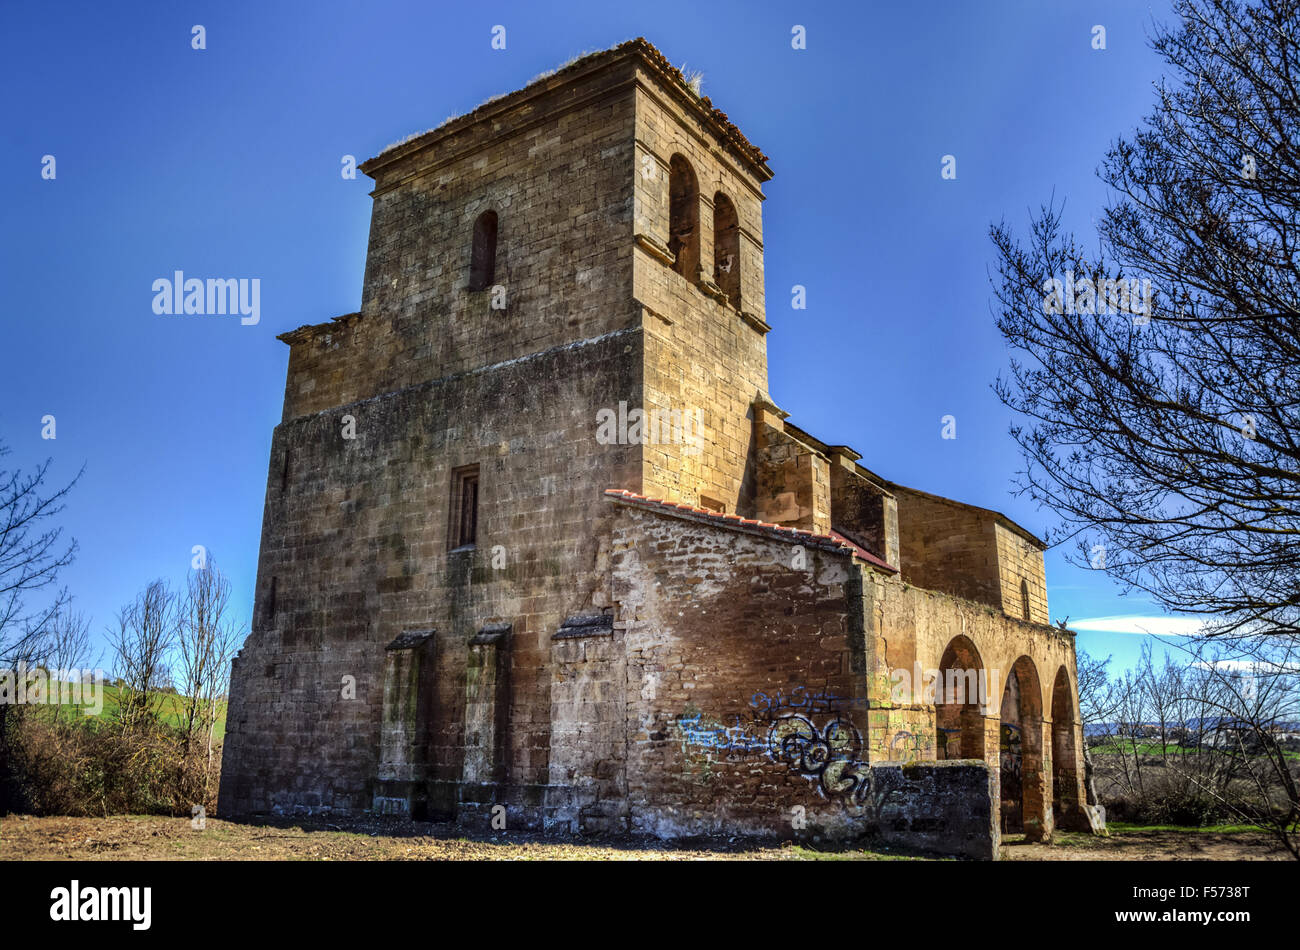 Iglesia abandonada españa fotografías e imágenes de alta resolución - Alamy